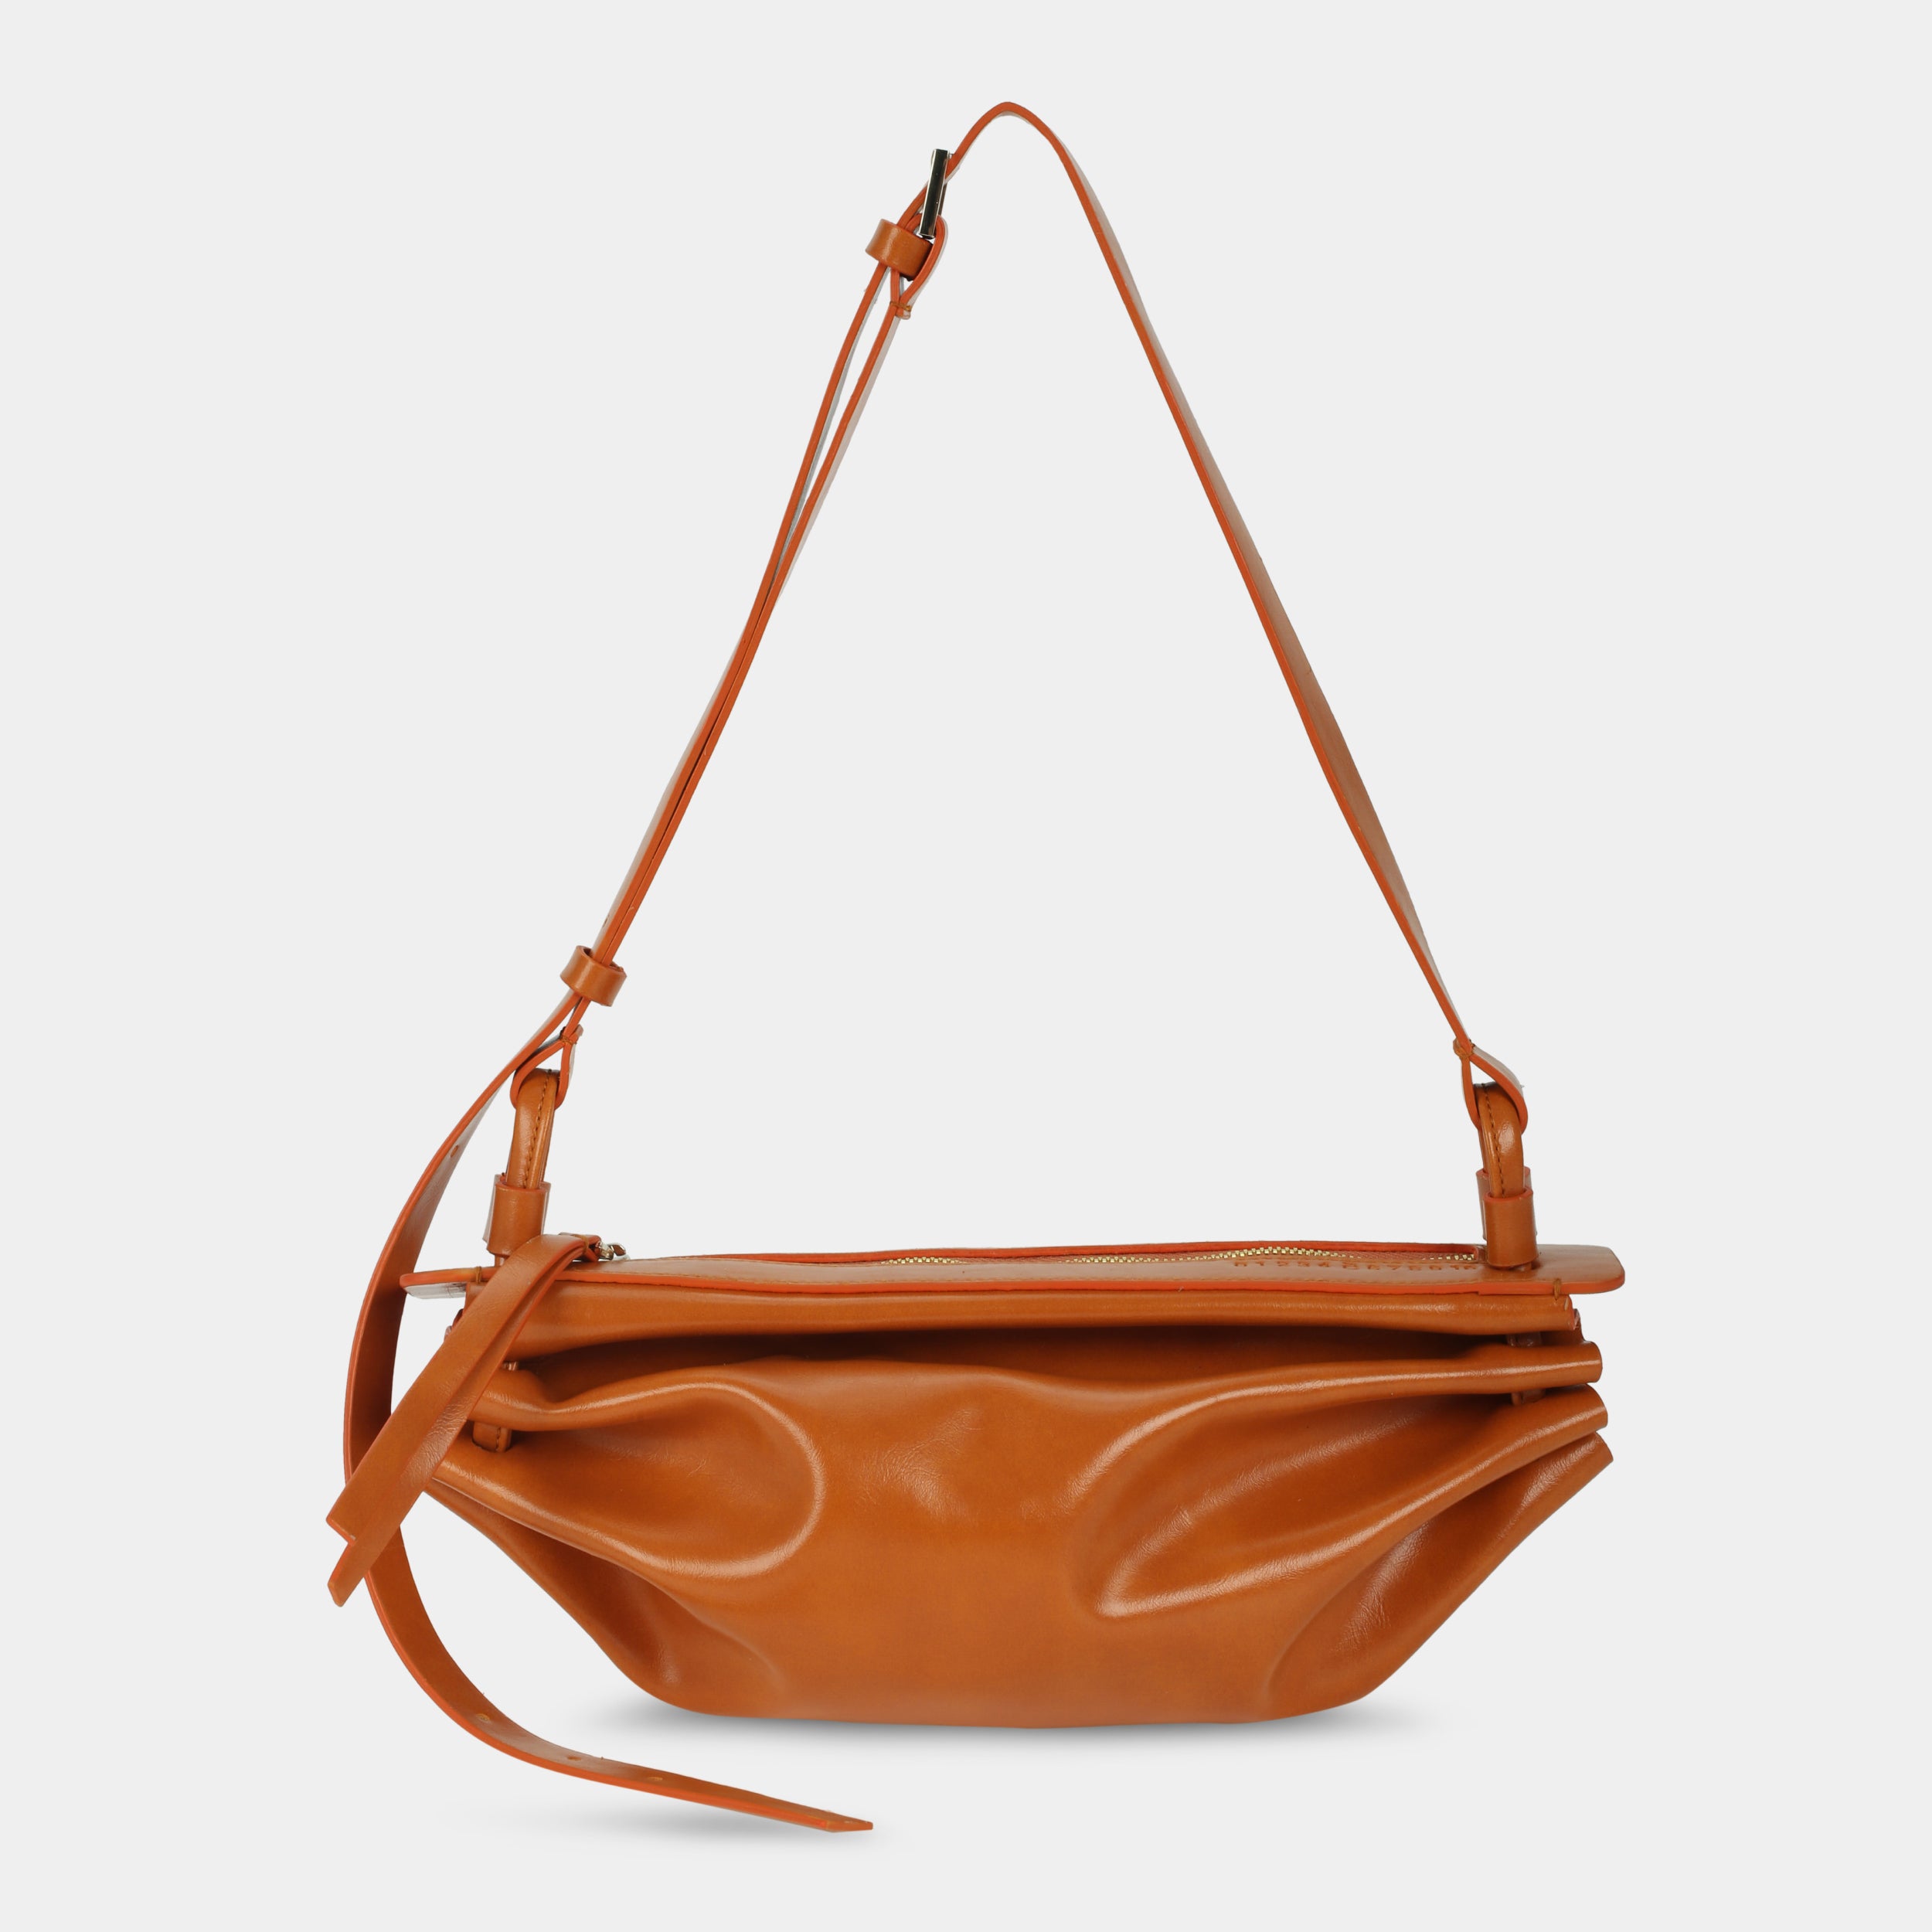 BOAT bag large size (M) orange color